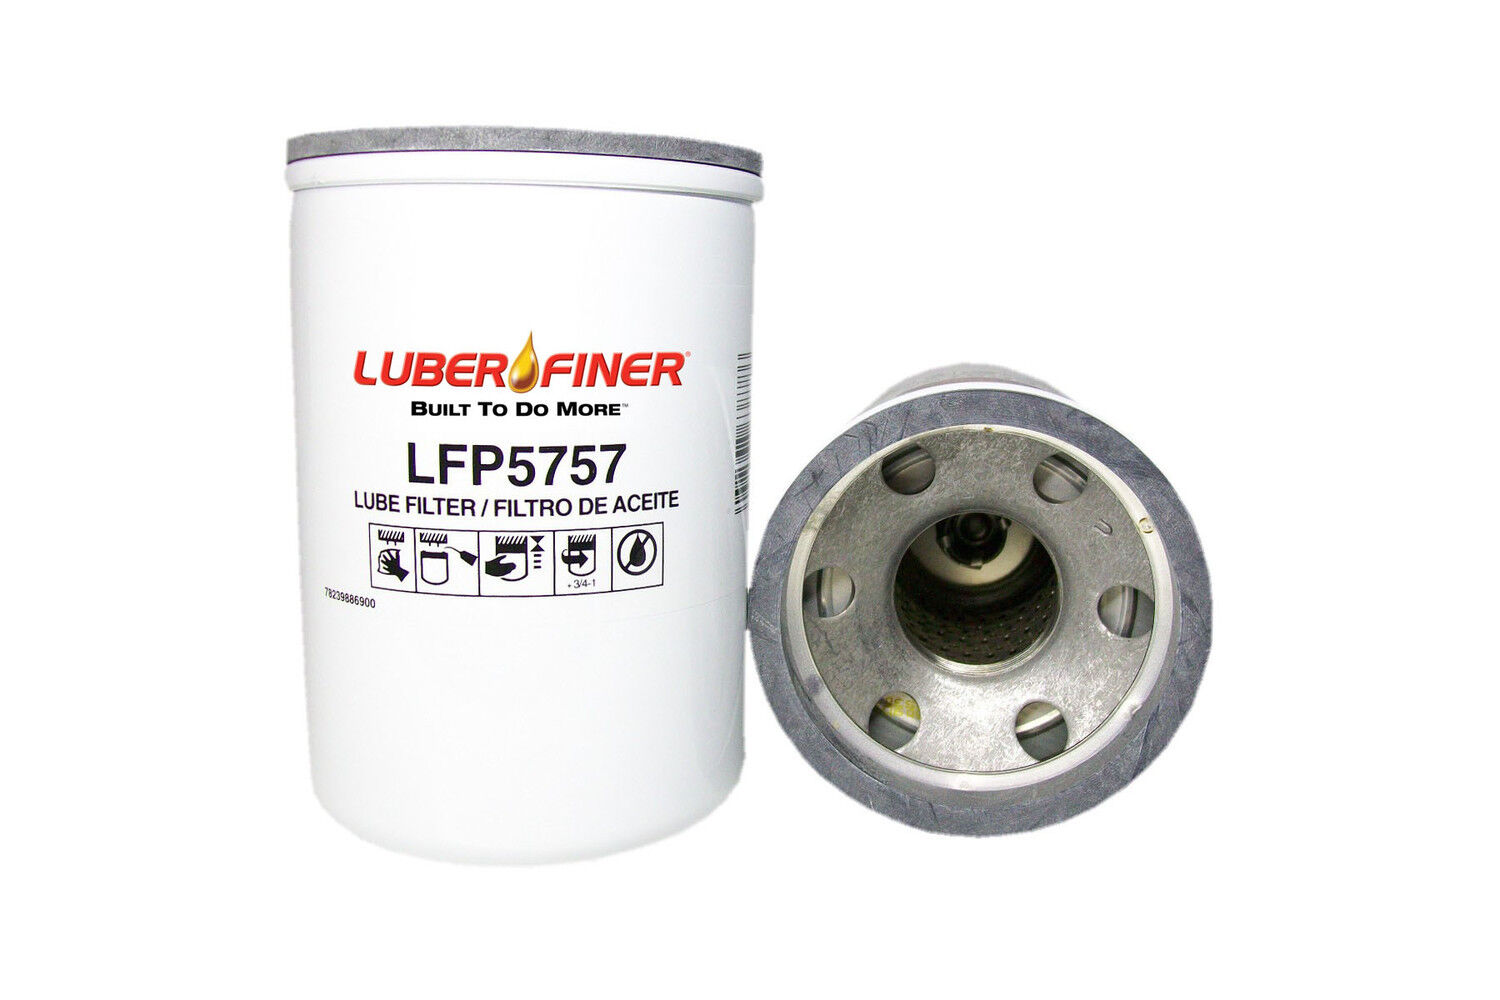 Oil Filter   Luber-Finer   LFP5757